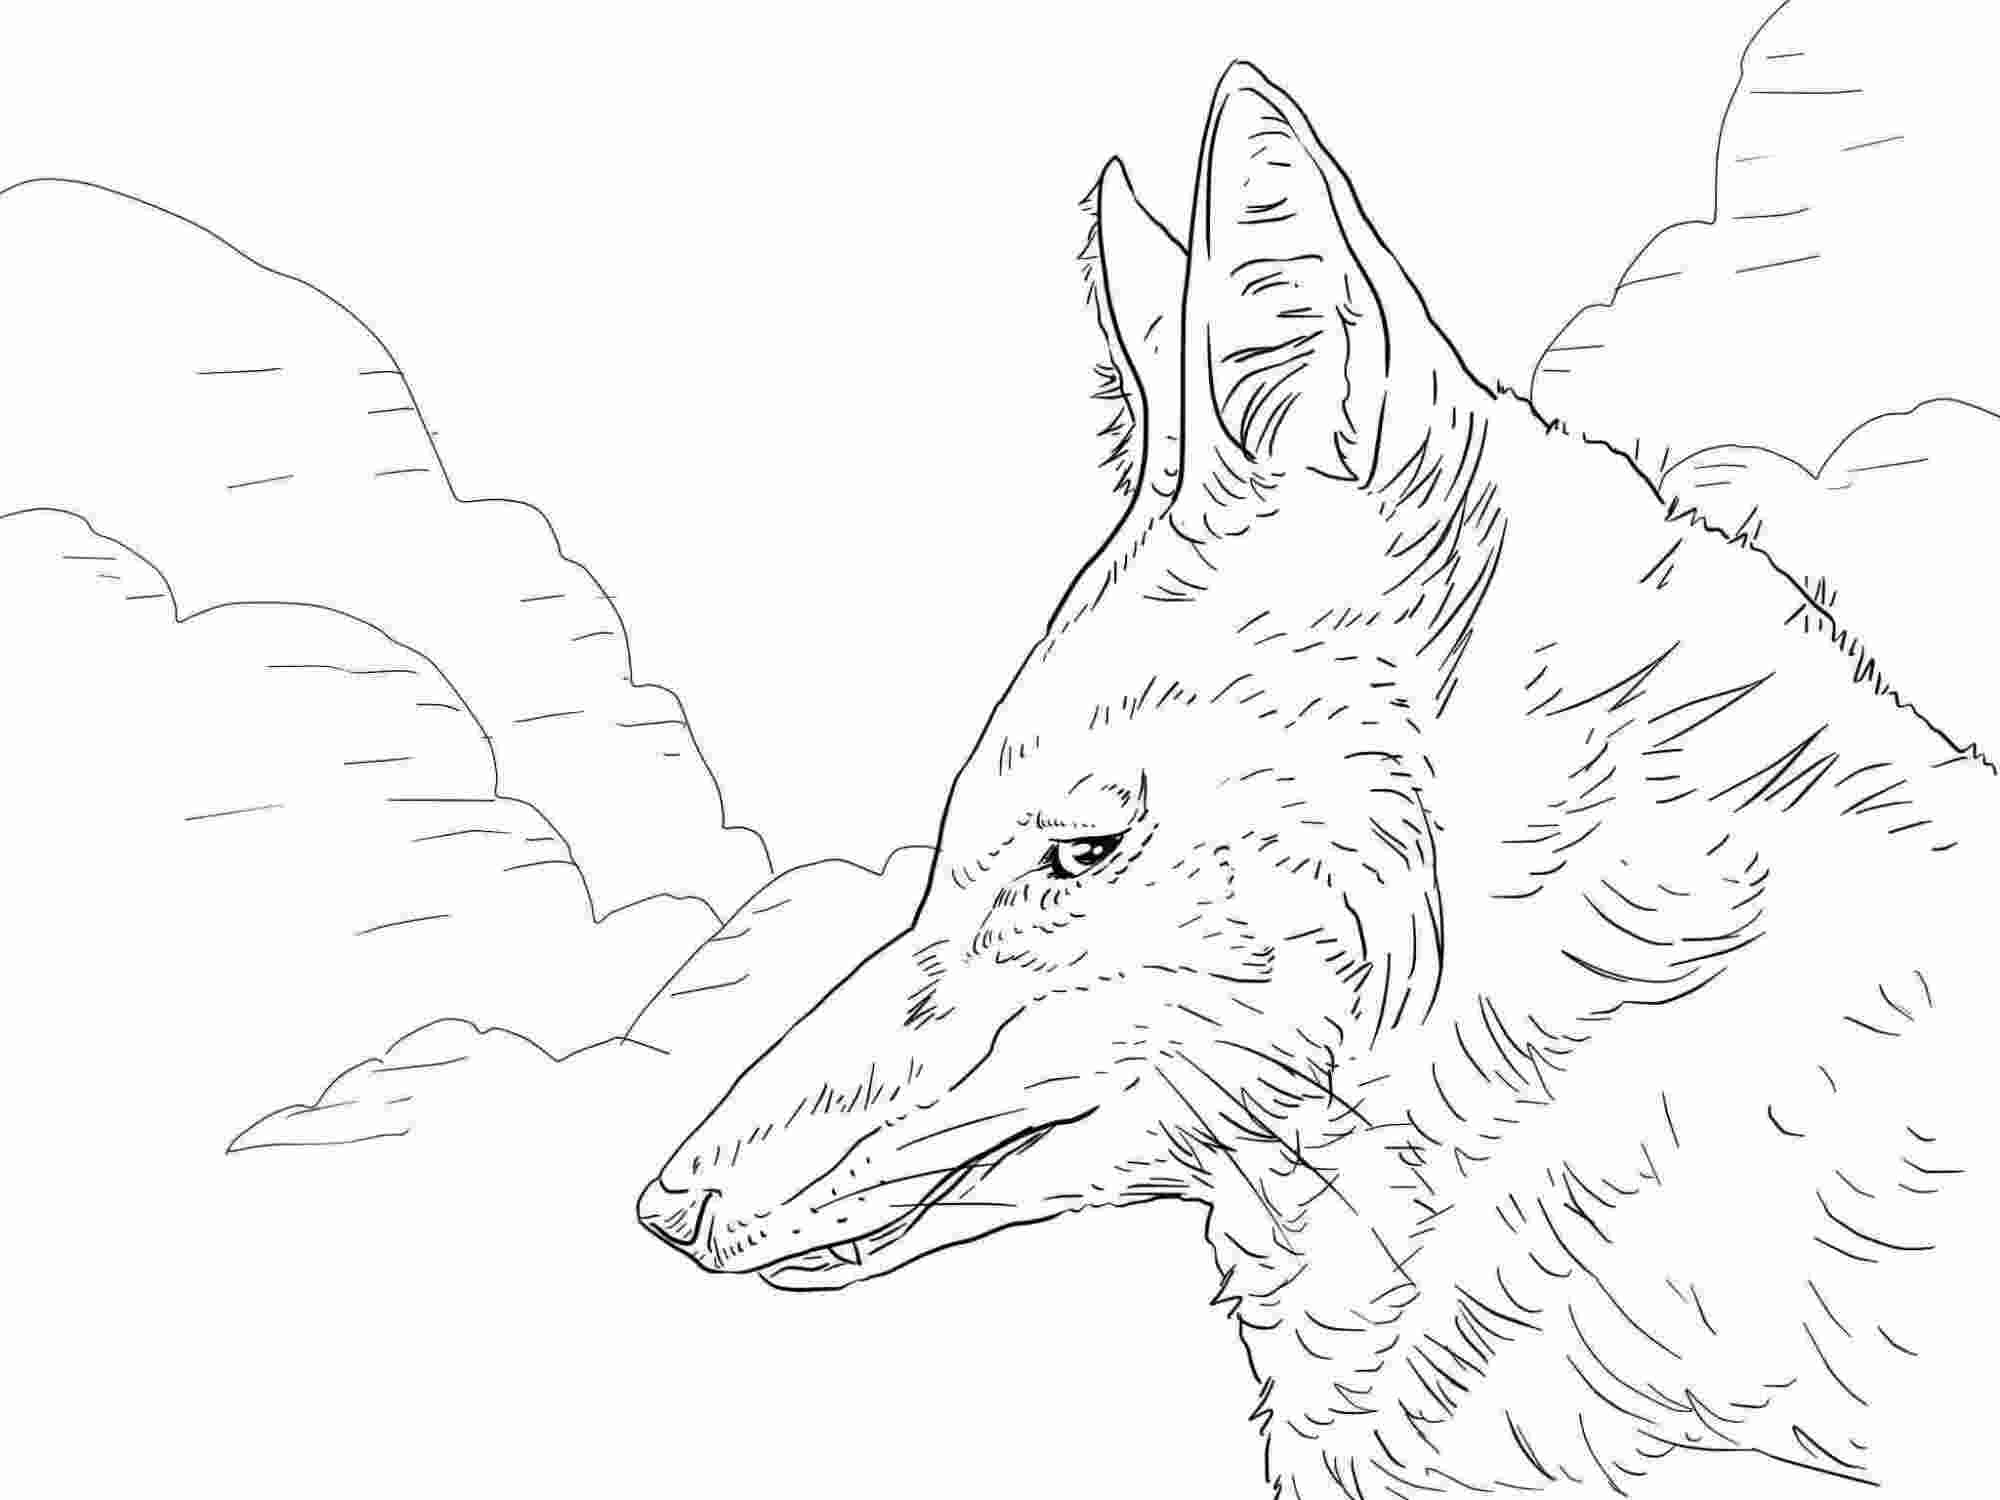 La testa del lupo etiope ha una folta pelliccia di lupo